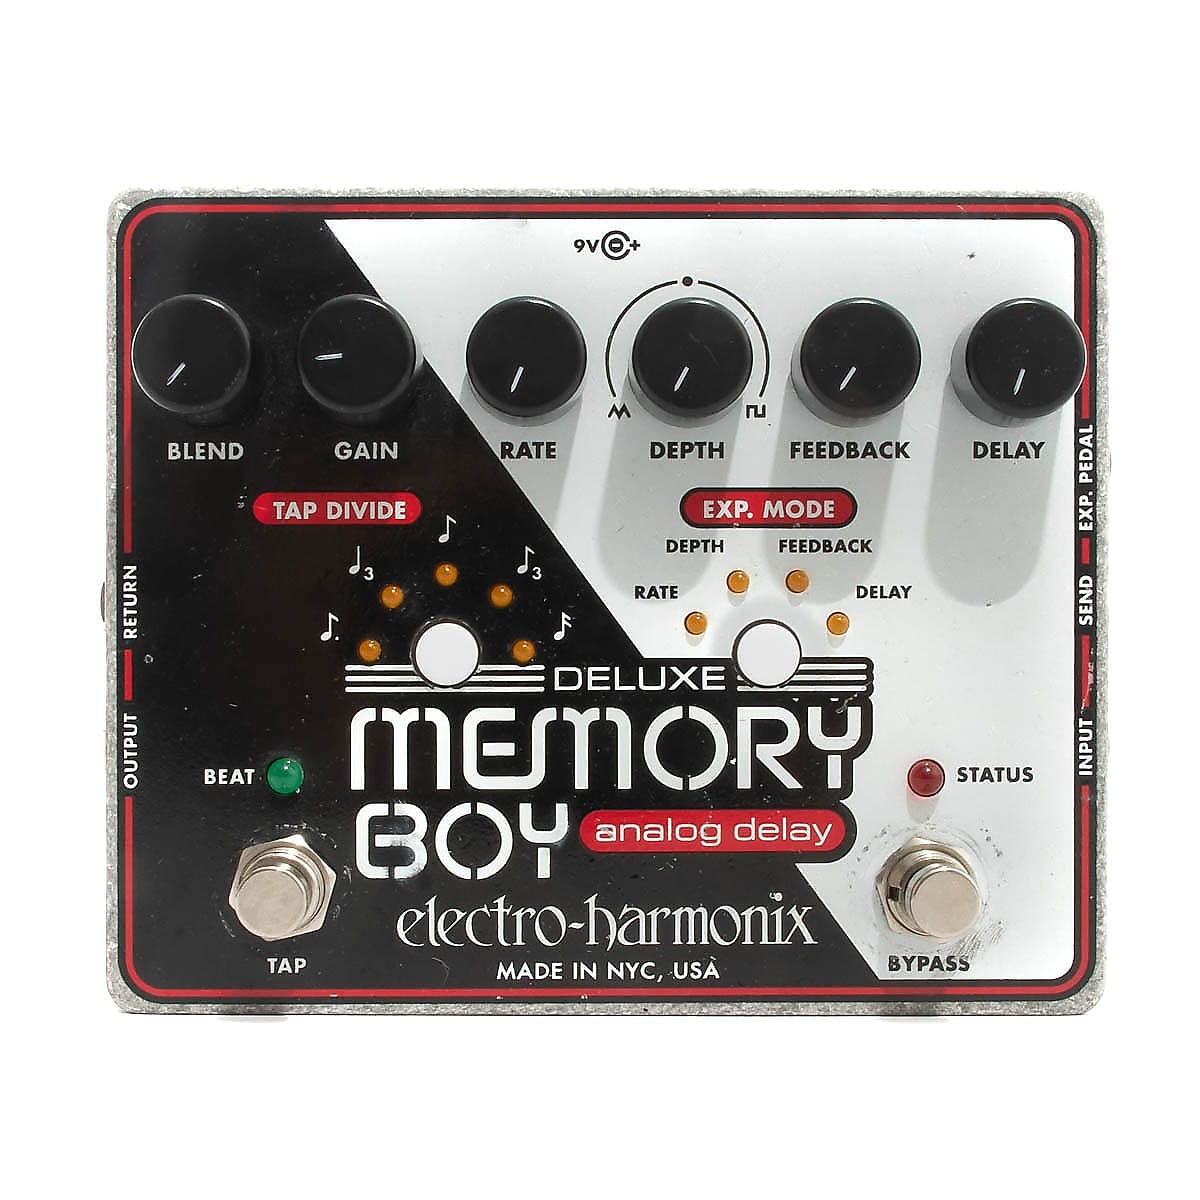 Boy　Electro-Harmonix　Deluxe　Memory　Reverb